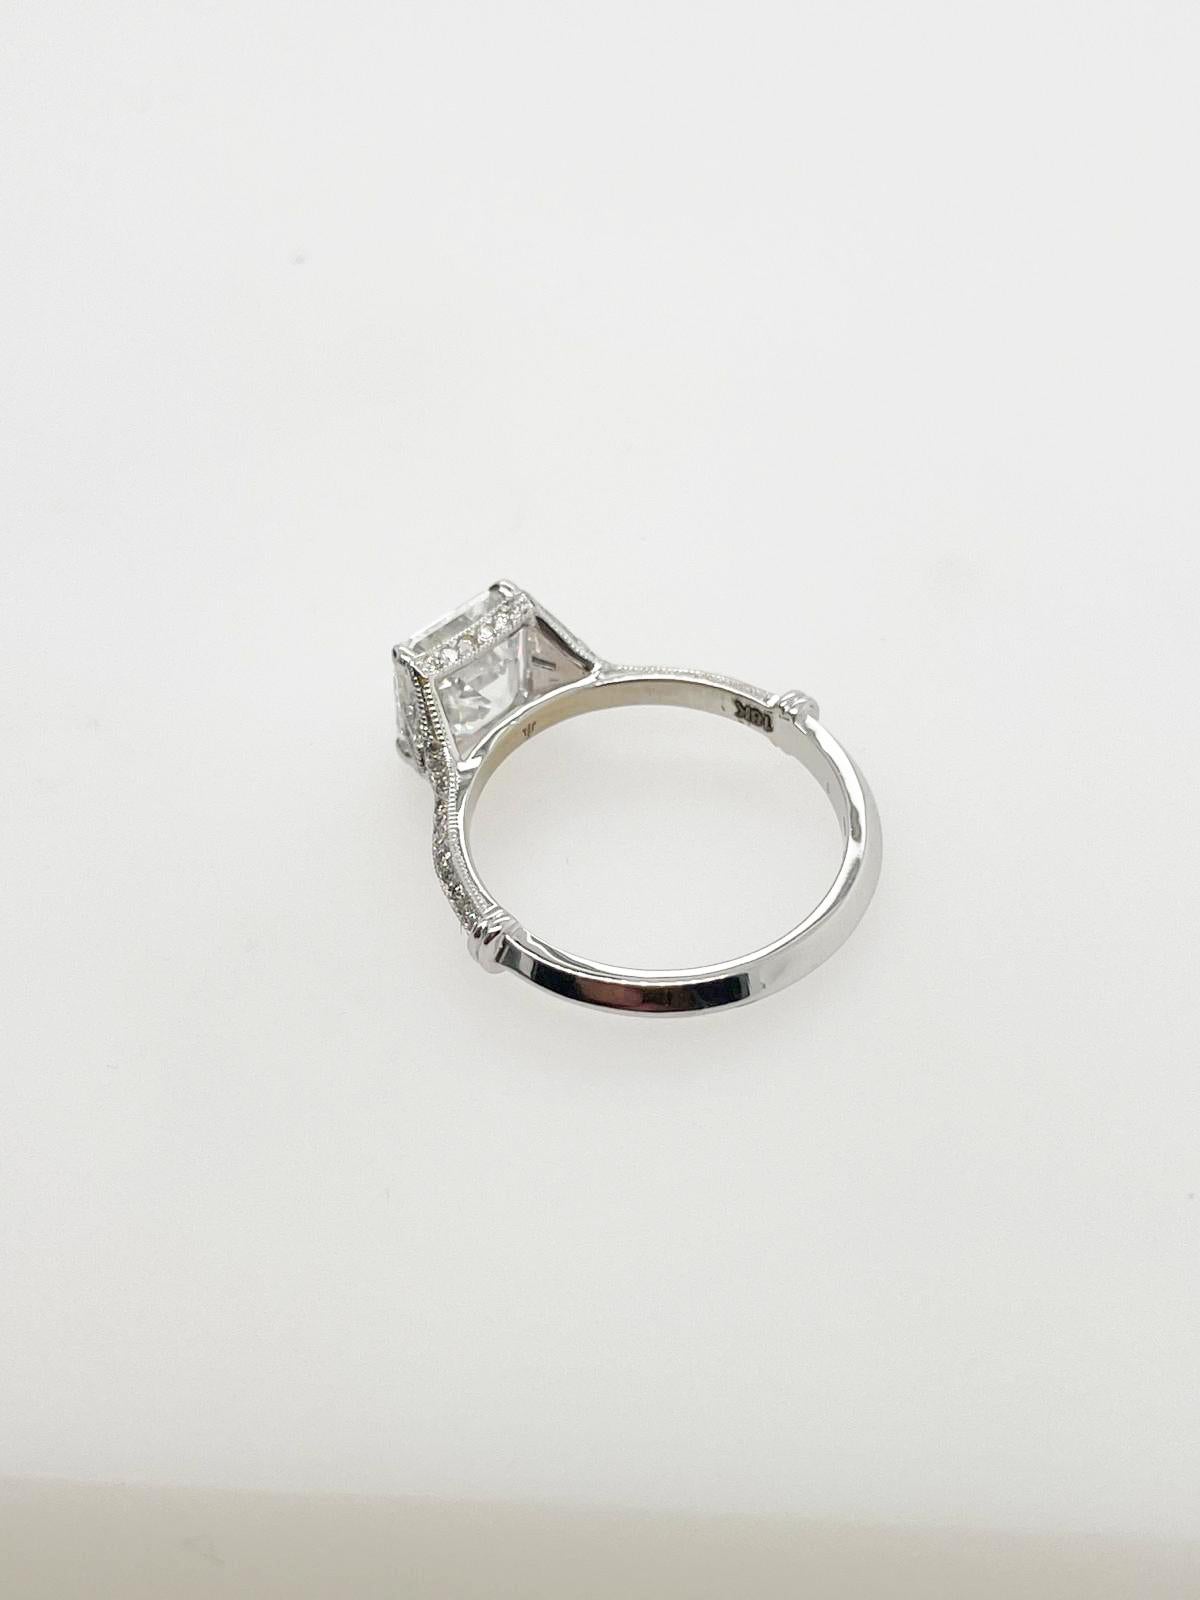 For Sale:  2ct Art Deco asscher cut diamond ring 4